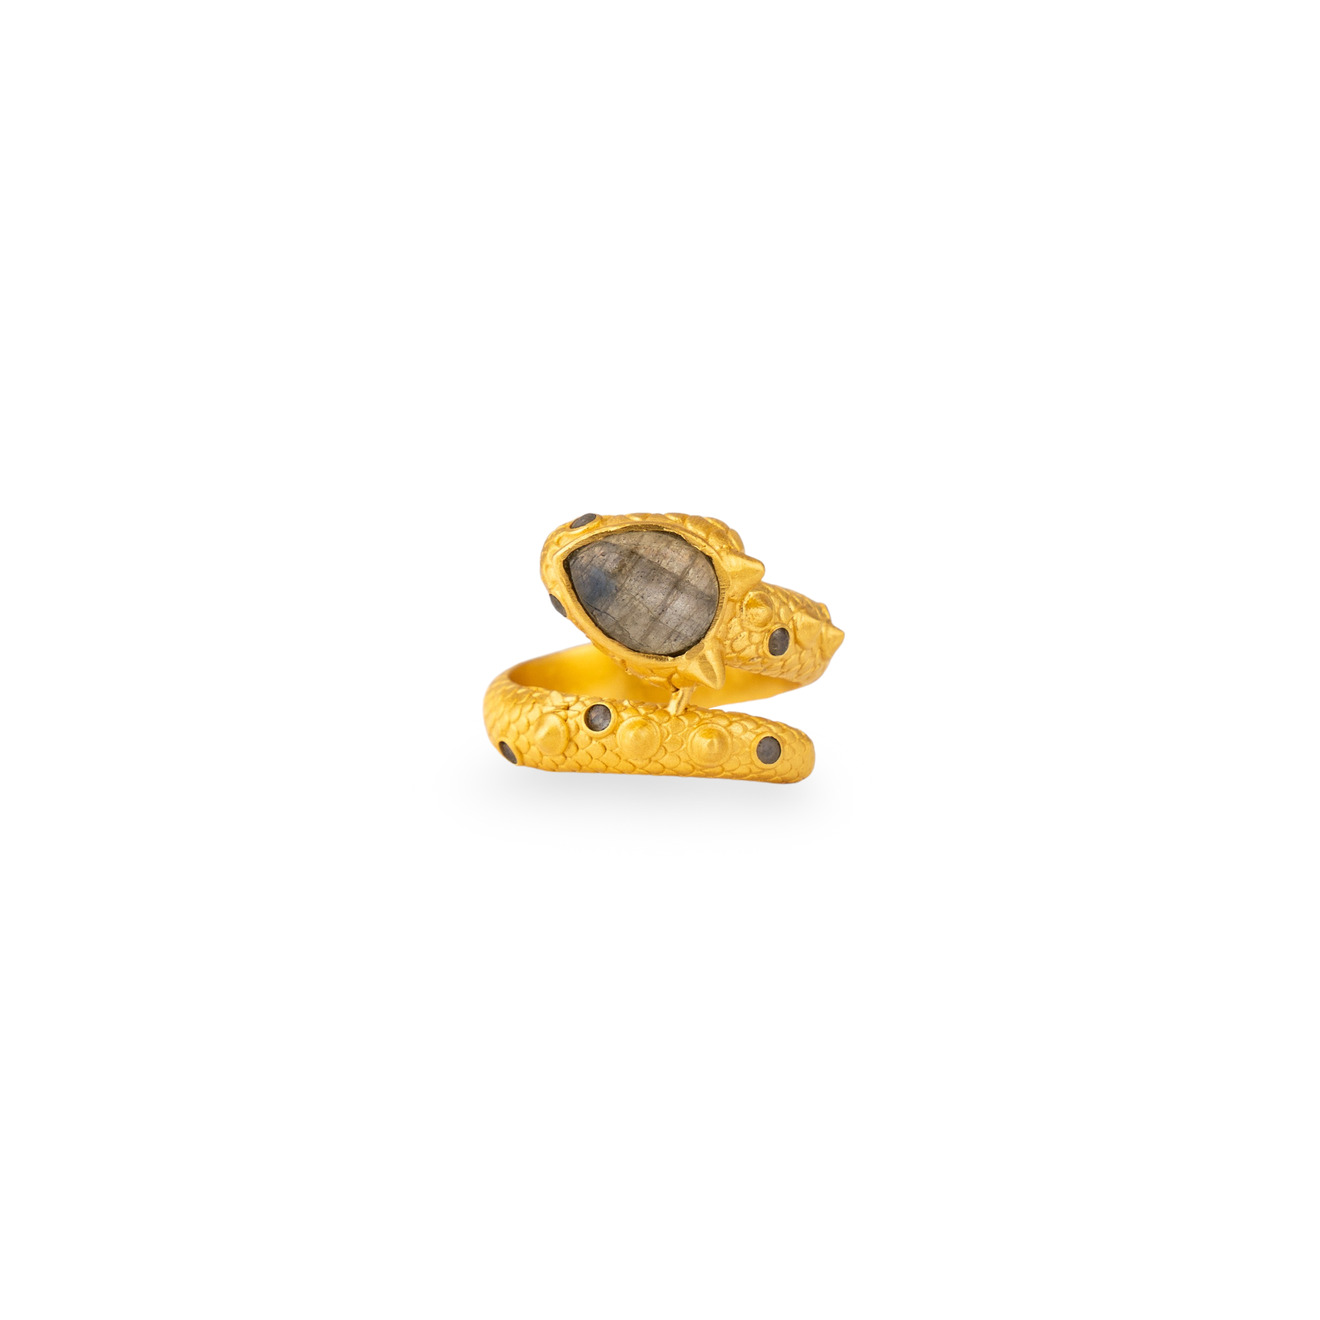 Boheme Покрытое золотом кольцо DRAGON XANADU SHORT с лабрадором boheme позолоченные серьги dragon xanadu с лабрадором